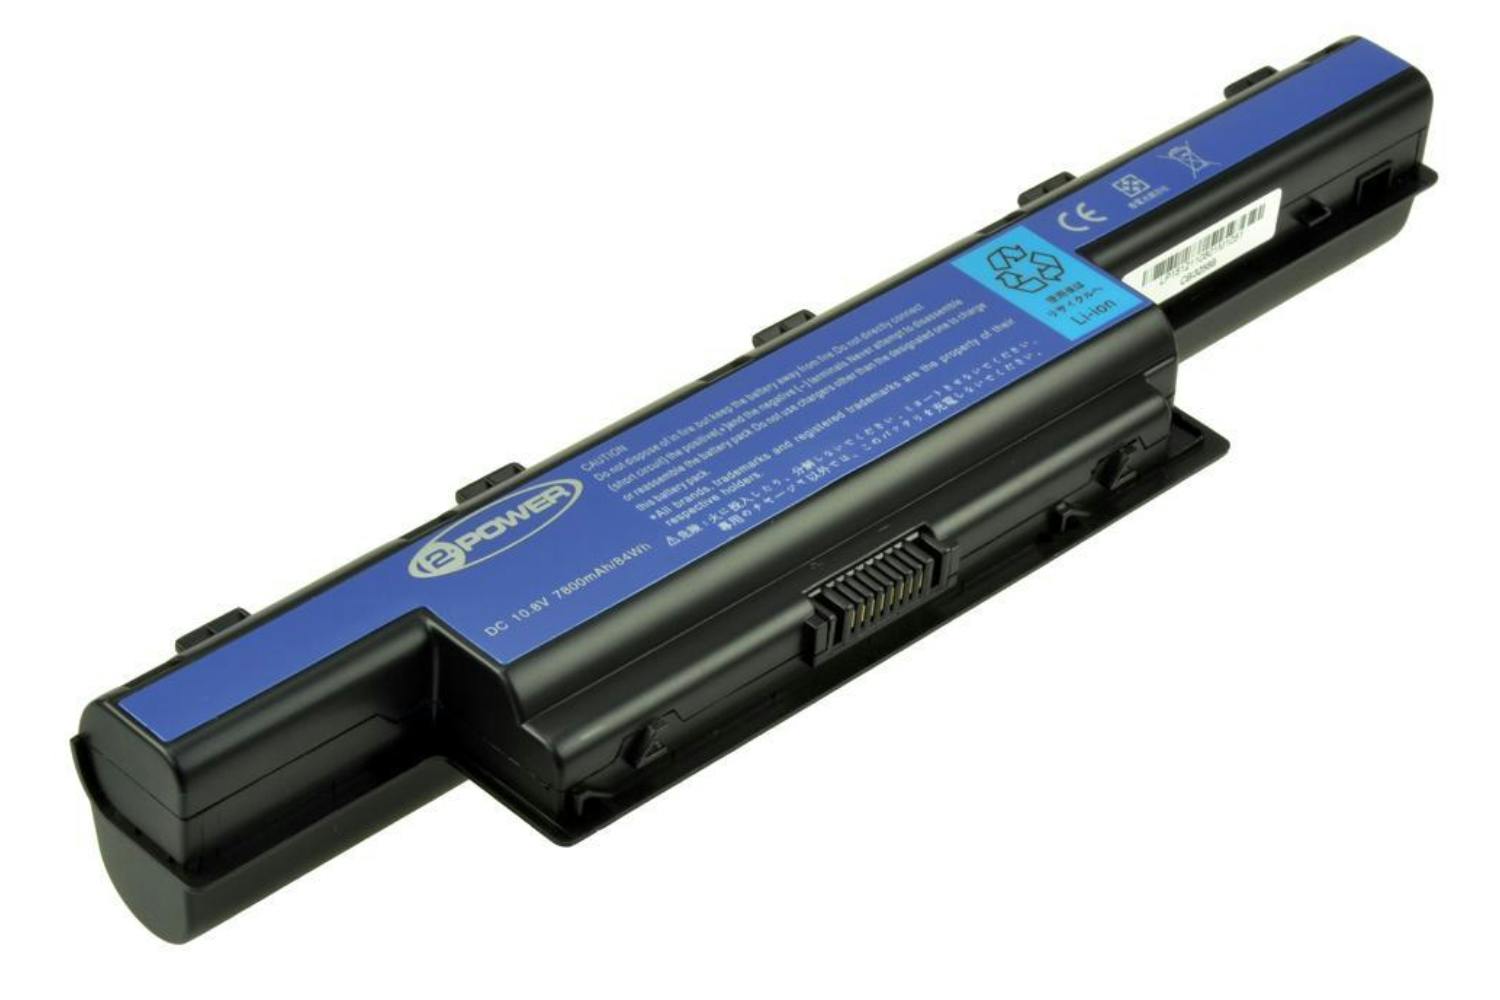 2-Power Main Battery Pack 11.1V 7800mAh